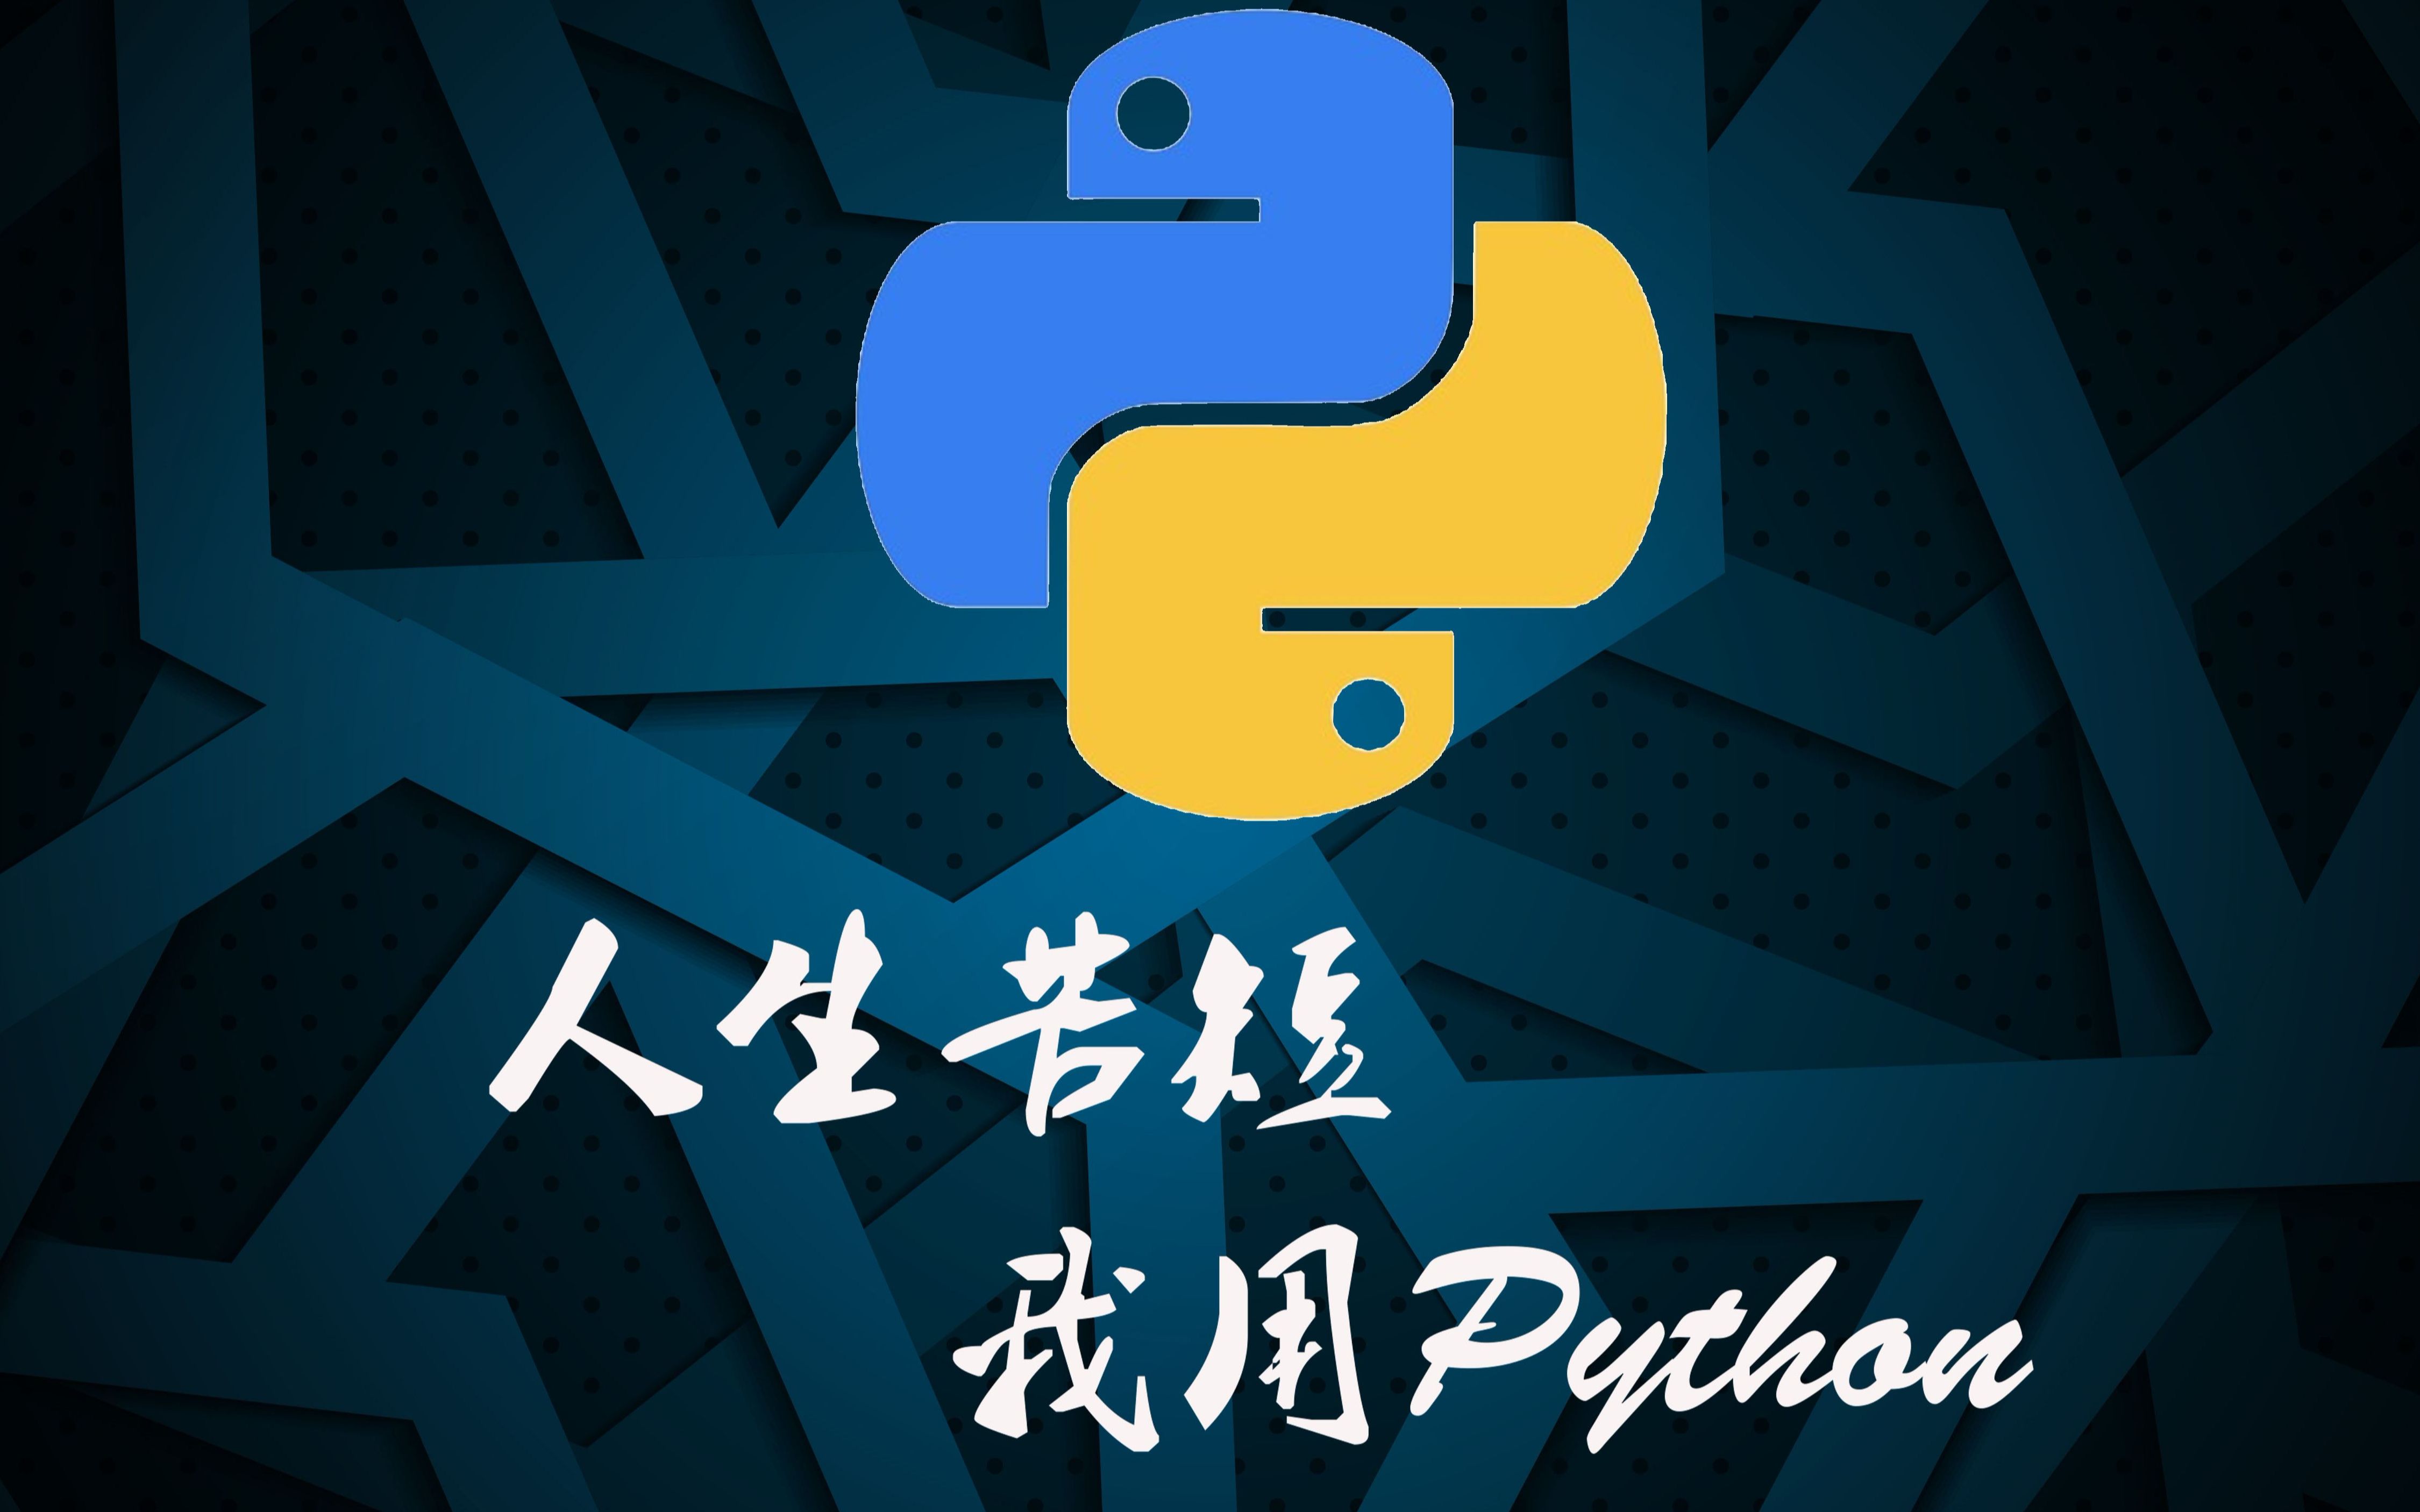 python爬虫入门教程(非常详细),超级简单的Python爬虫教程 - 哔哩哔哩